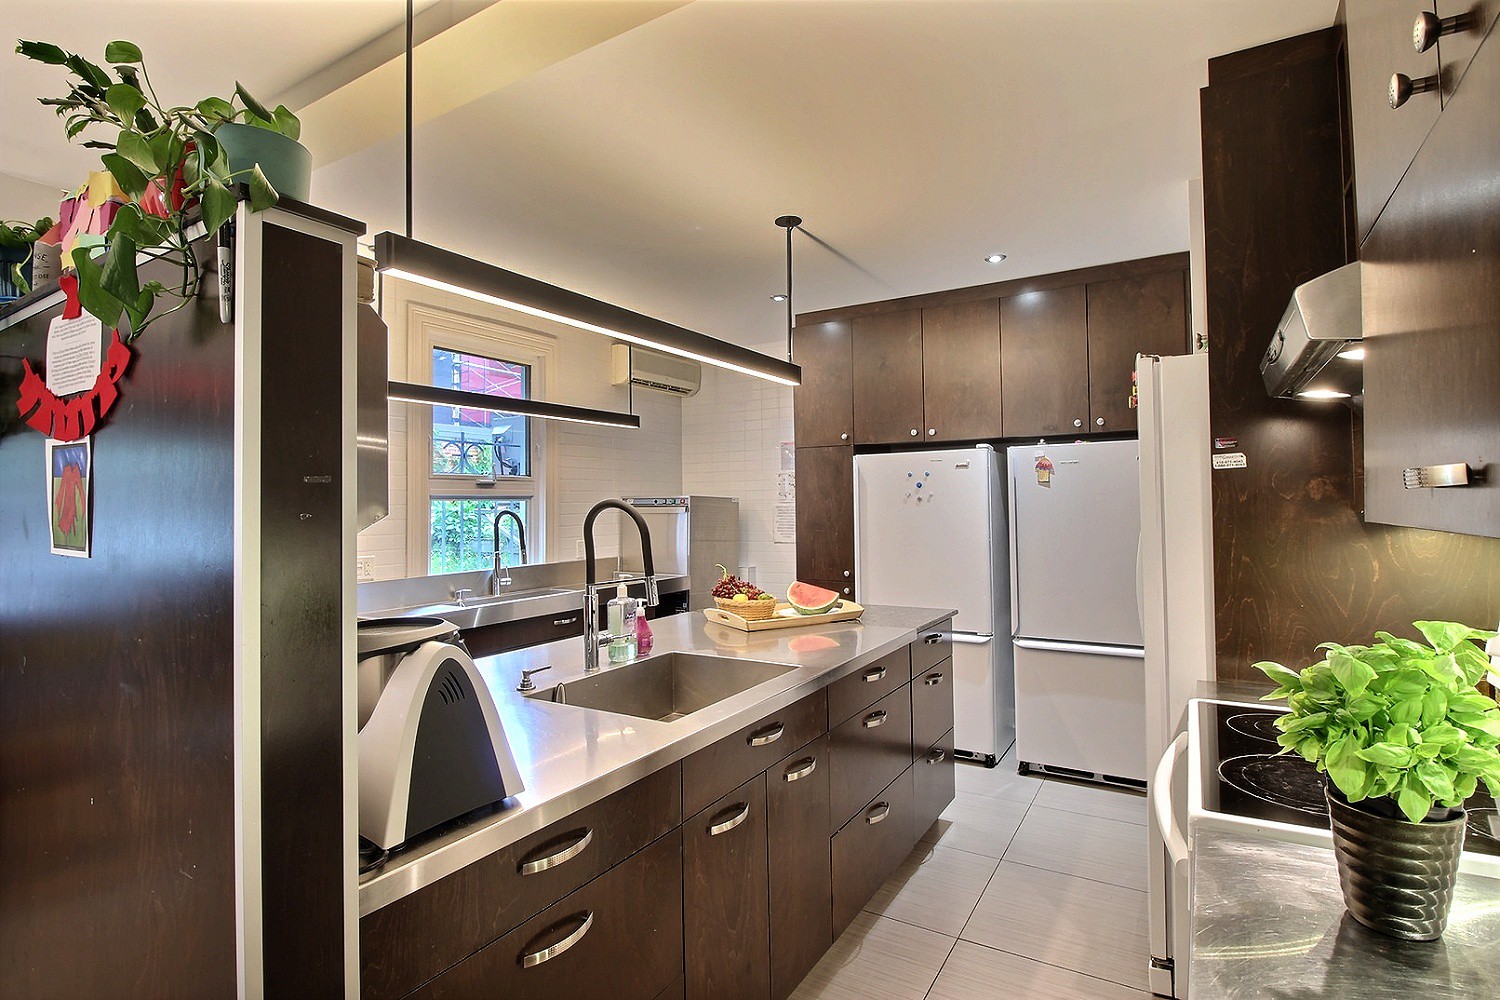 Photo d'une cuisine moderne spacieuse toute équipée (thermomix, plaques de cuisson, four, frigos, plan de travail…) et munie d’une fenêtre.